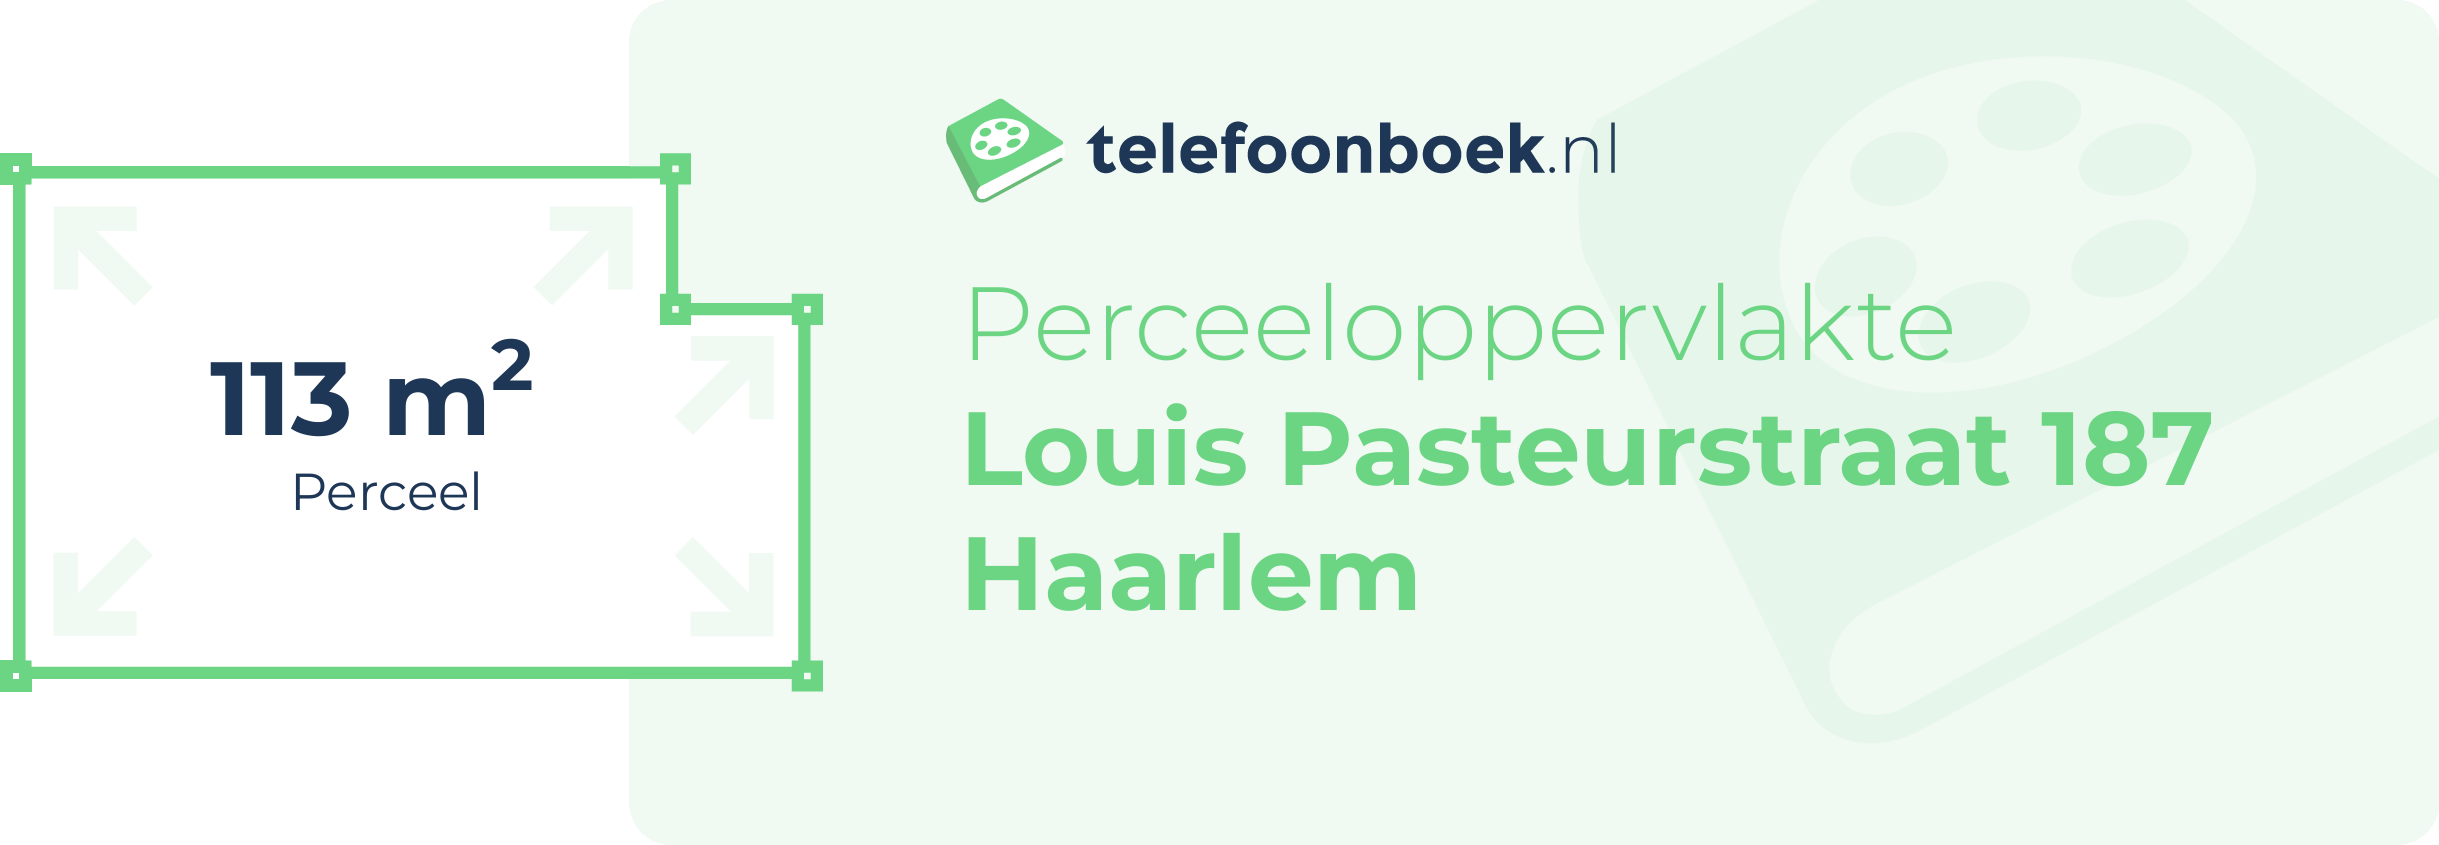 Perceeloppervlakte Louis Pasteurstraat 187 Haarlem